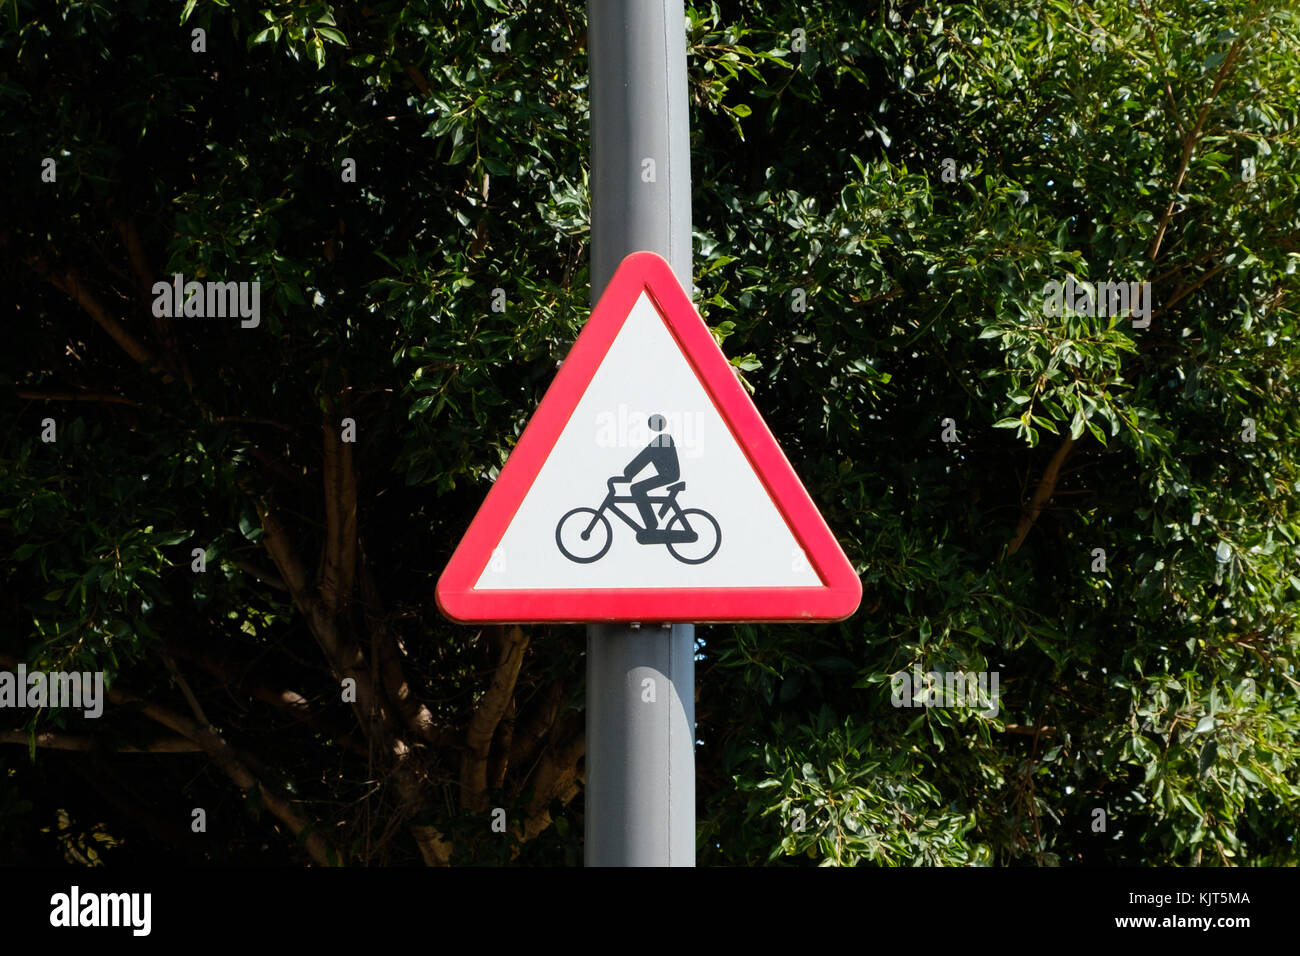 Fahrrad symbol Verkehrsschild - Vorsicht, Radfahrer Beschilderung Stockfoto